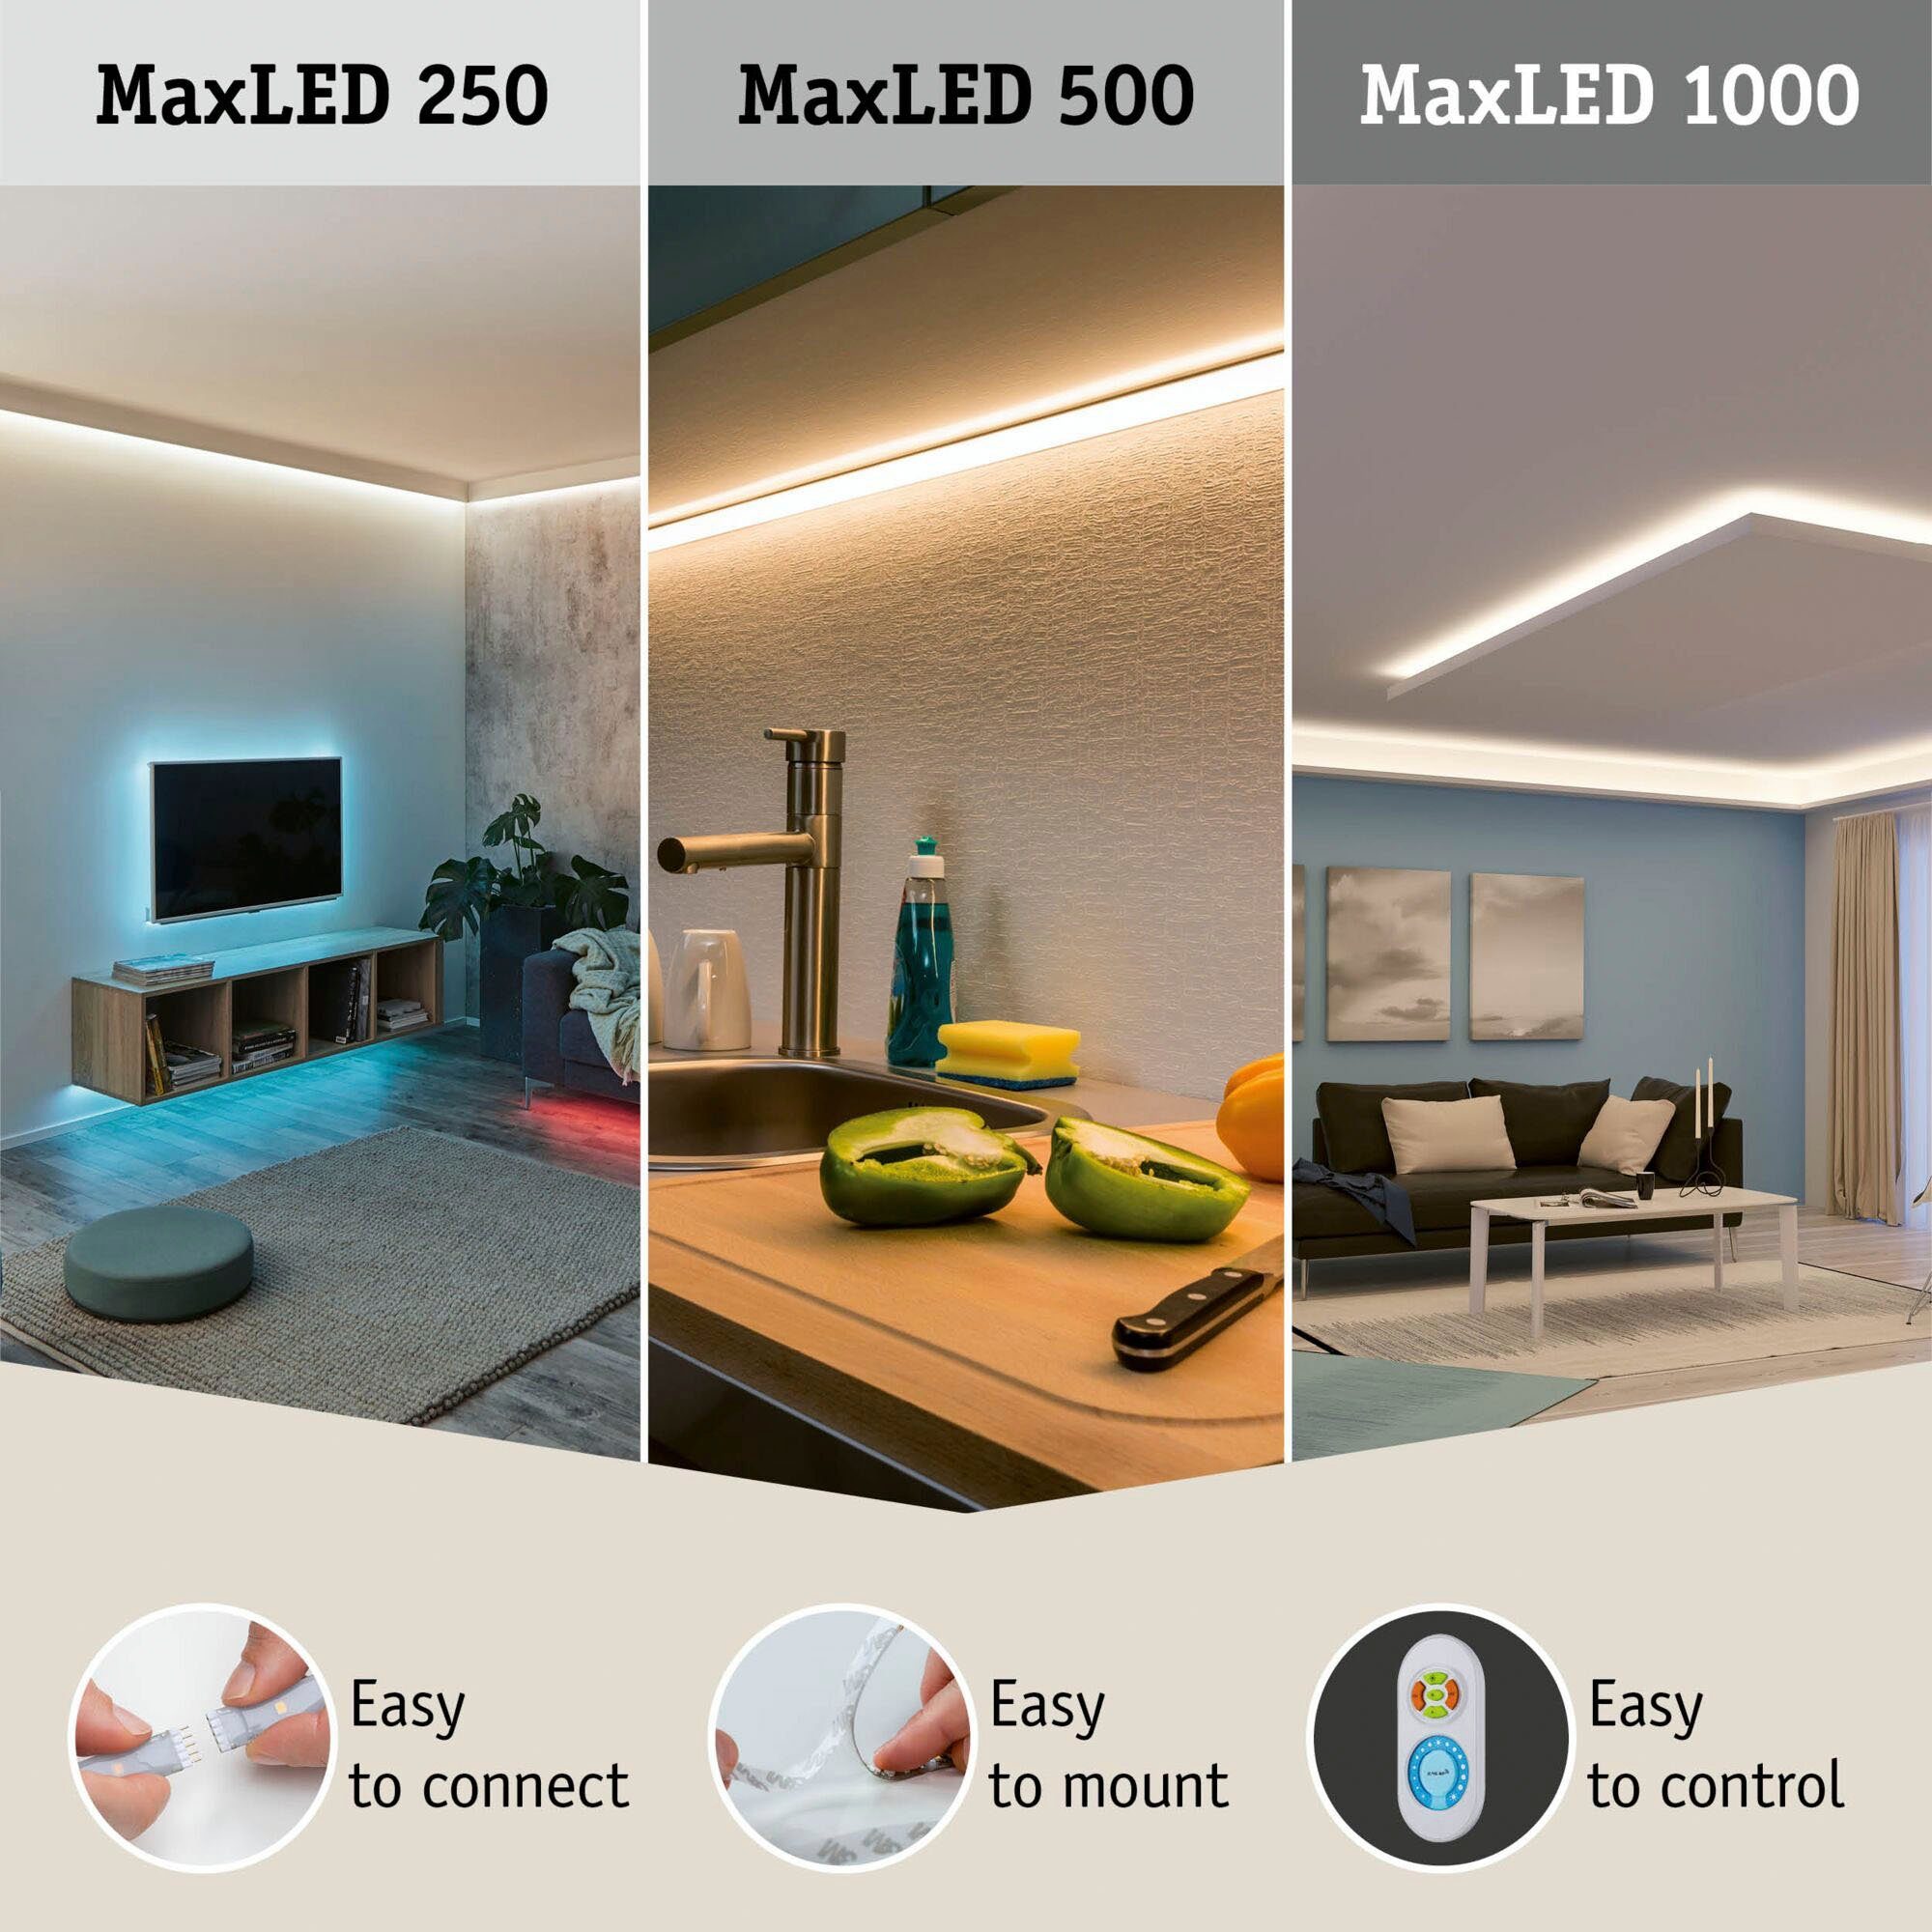 LED-Streifen 6500K, 10m Paulmann Home 550lm/m Smart Tageslichtweiß 500 MaxLED 1-flammig, 50W Basisset Basisset